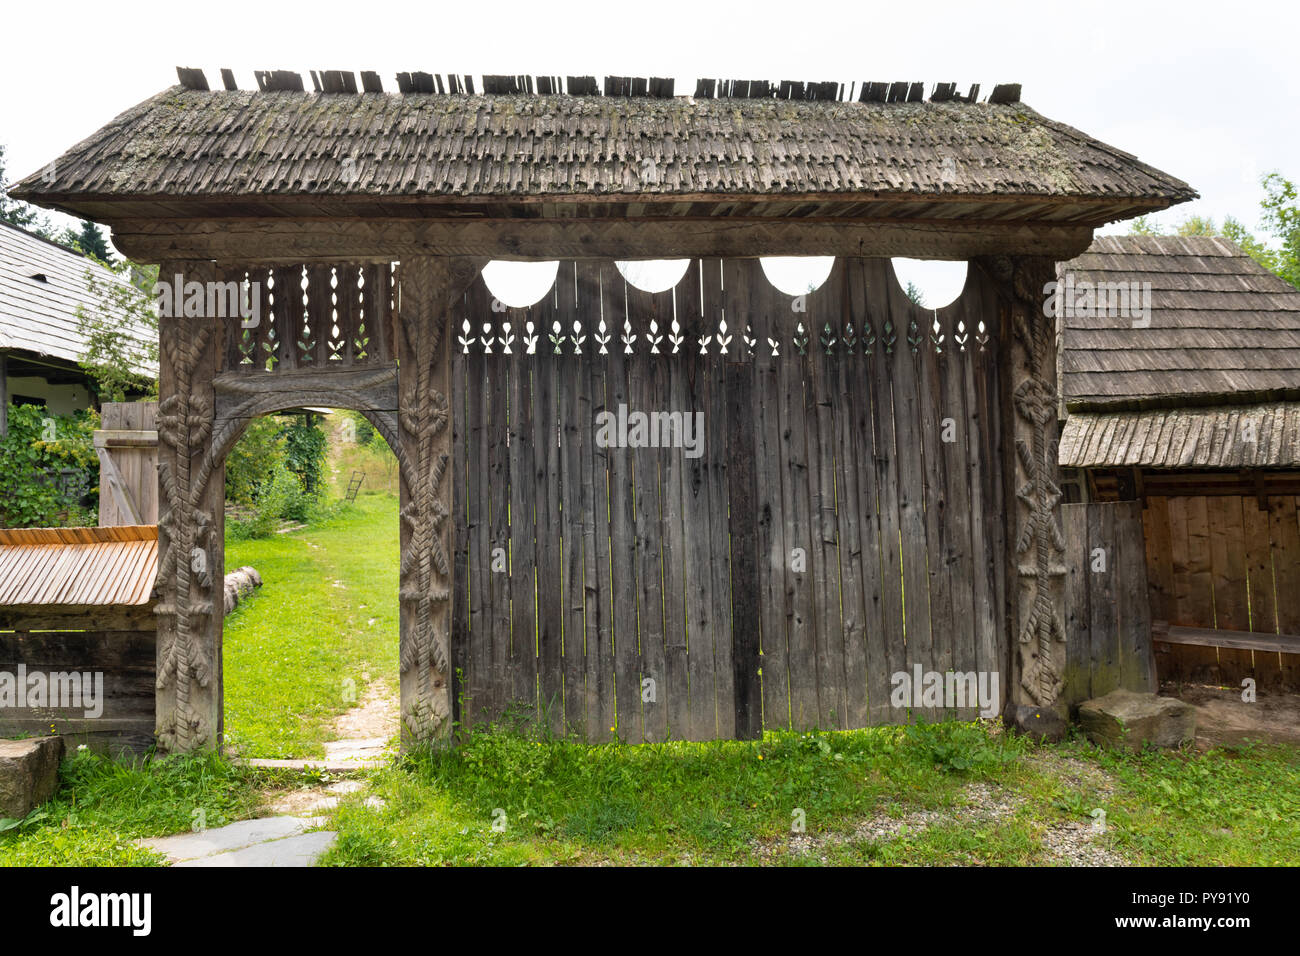 Porte sculptée en bois traditionnels fabriqués à la main à partir de la région de Maramures dans le nord de la Roumanie. Banque D'Images